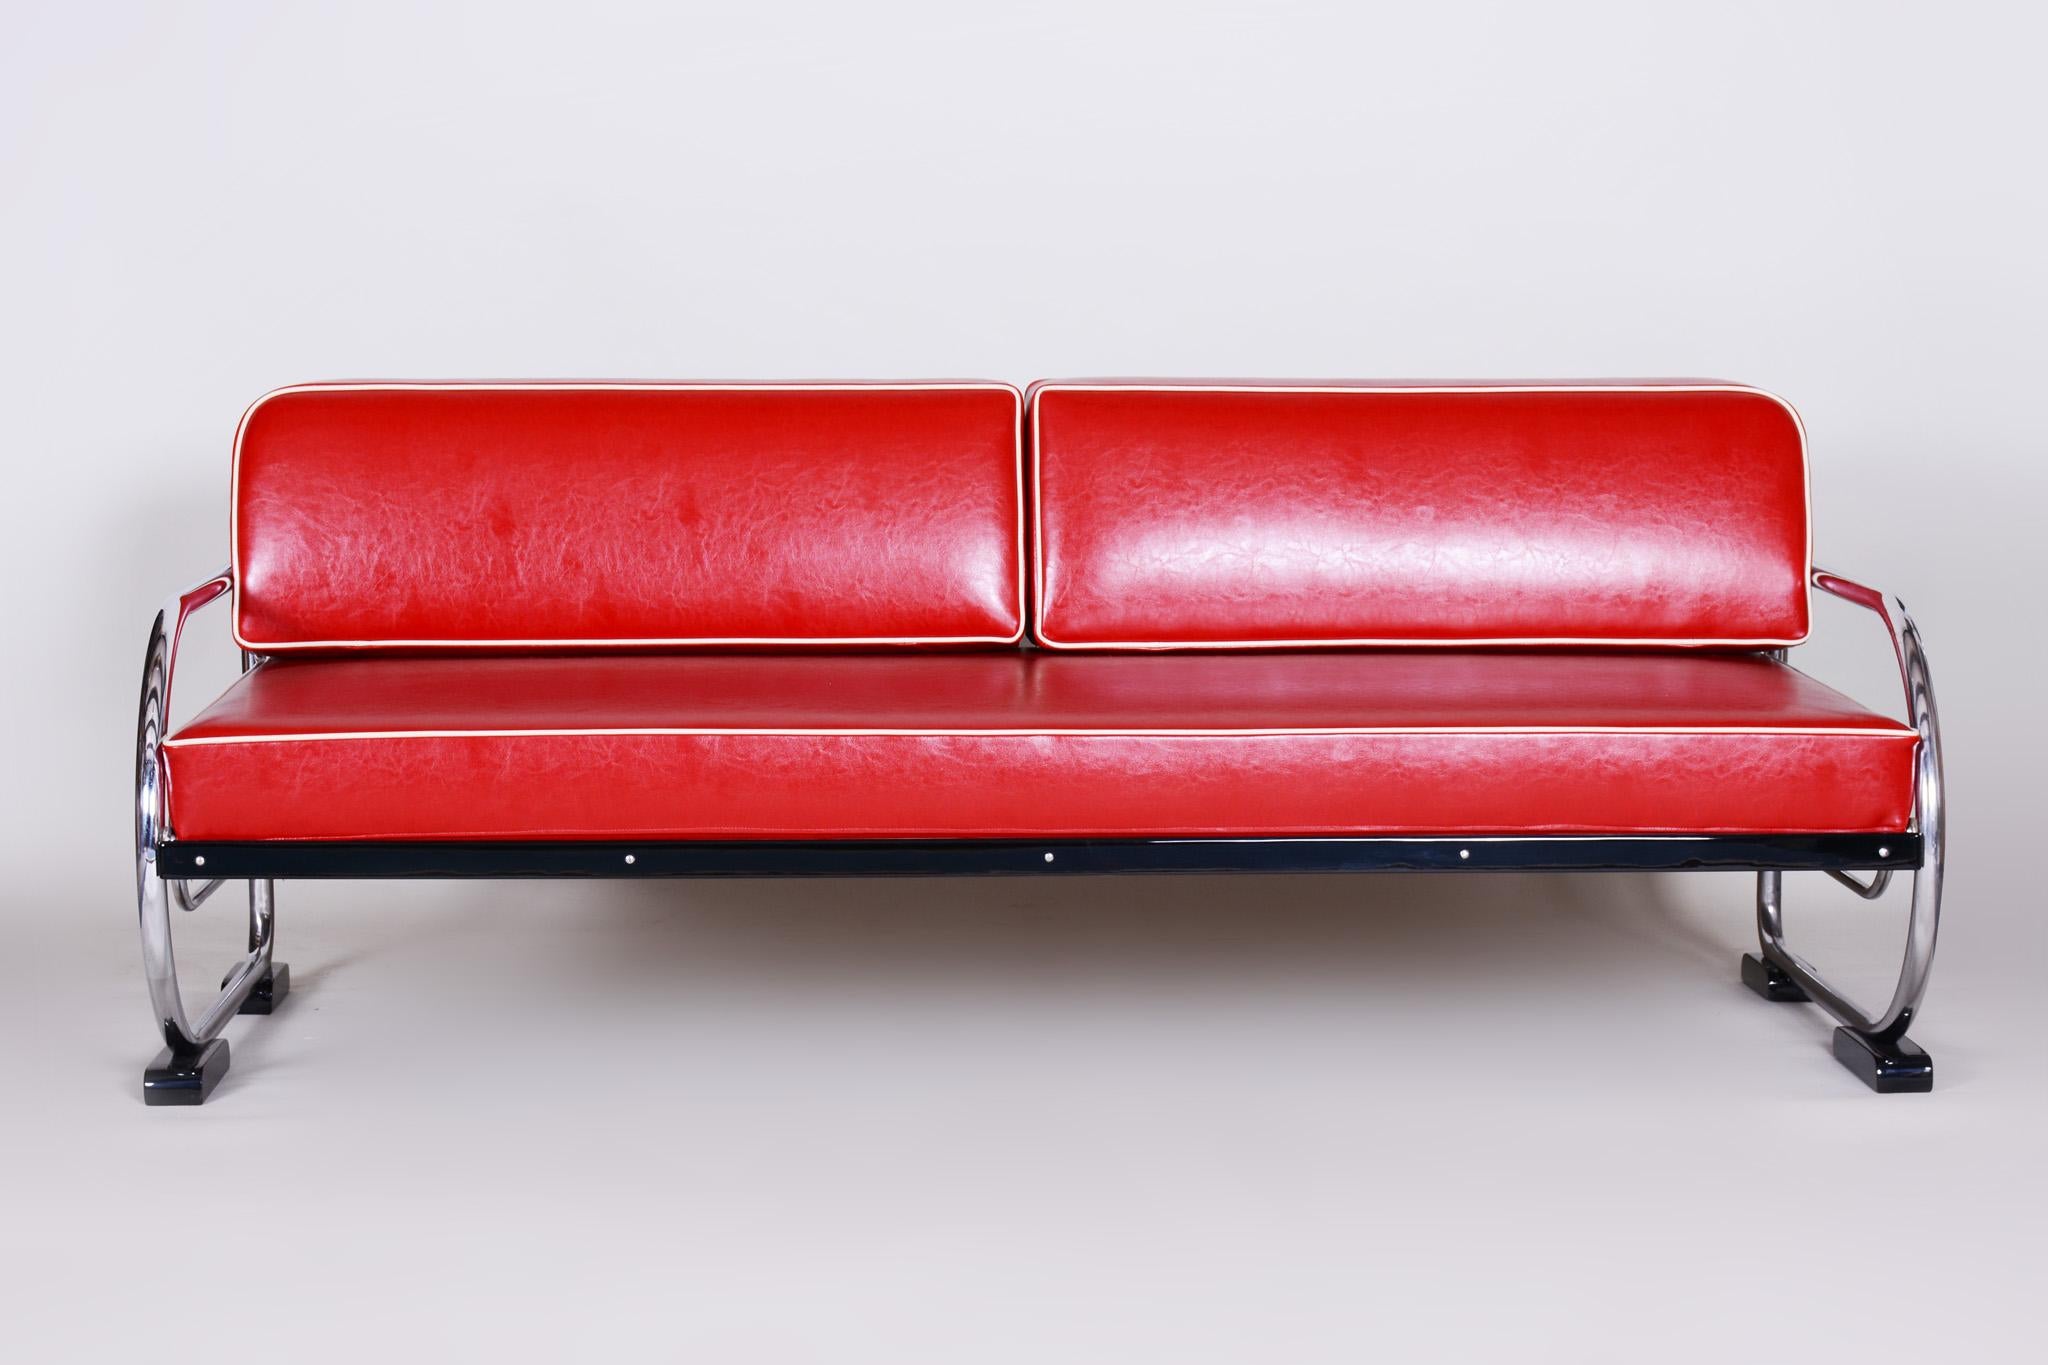 Rotes Bauhaus-Sofa aus verchromtem Stahlrohr von Robert Slezák, Design by Thonet, 1930er Jahre (20. Jahrhundert) im Angebot